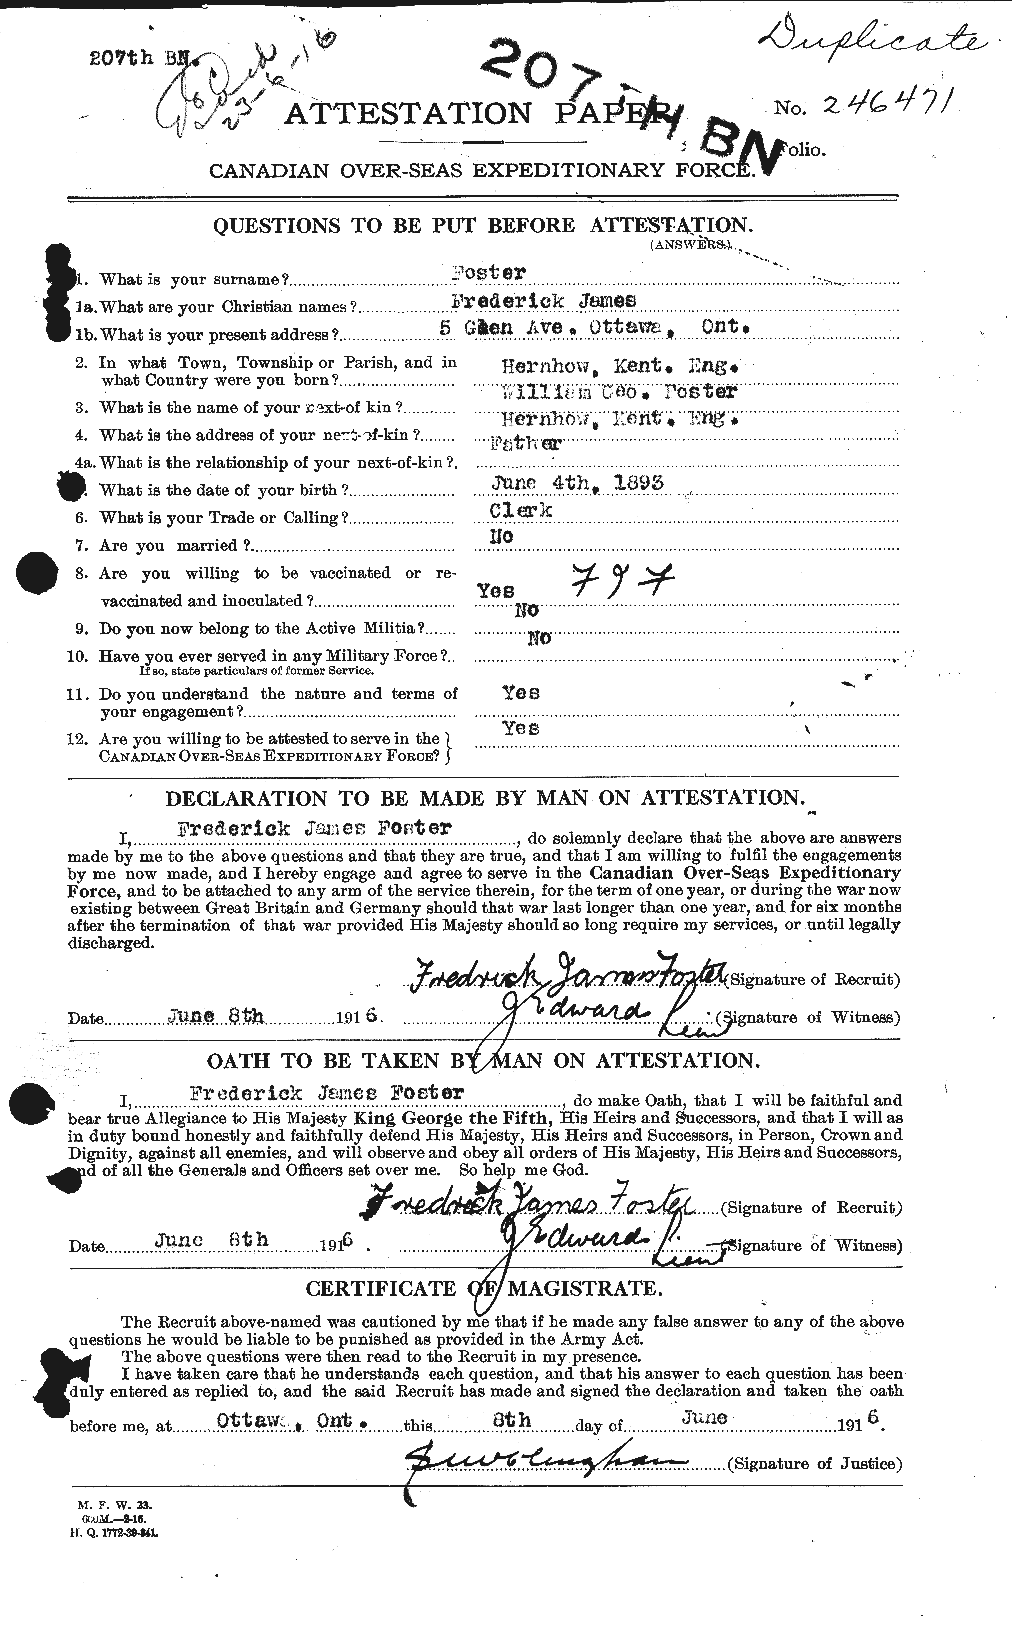 Dossiers du Personnel de la Première Guerre mondiale - CEC 330652a